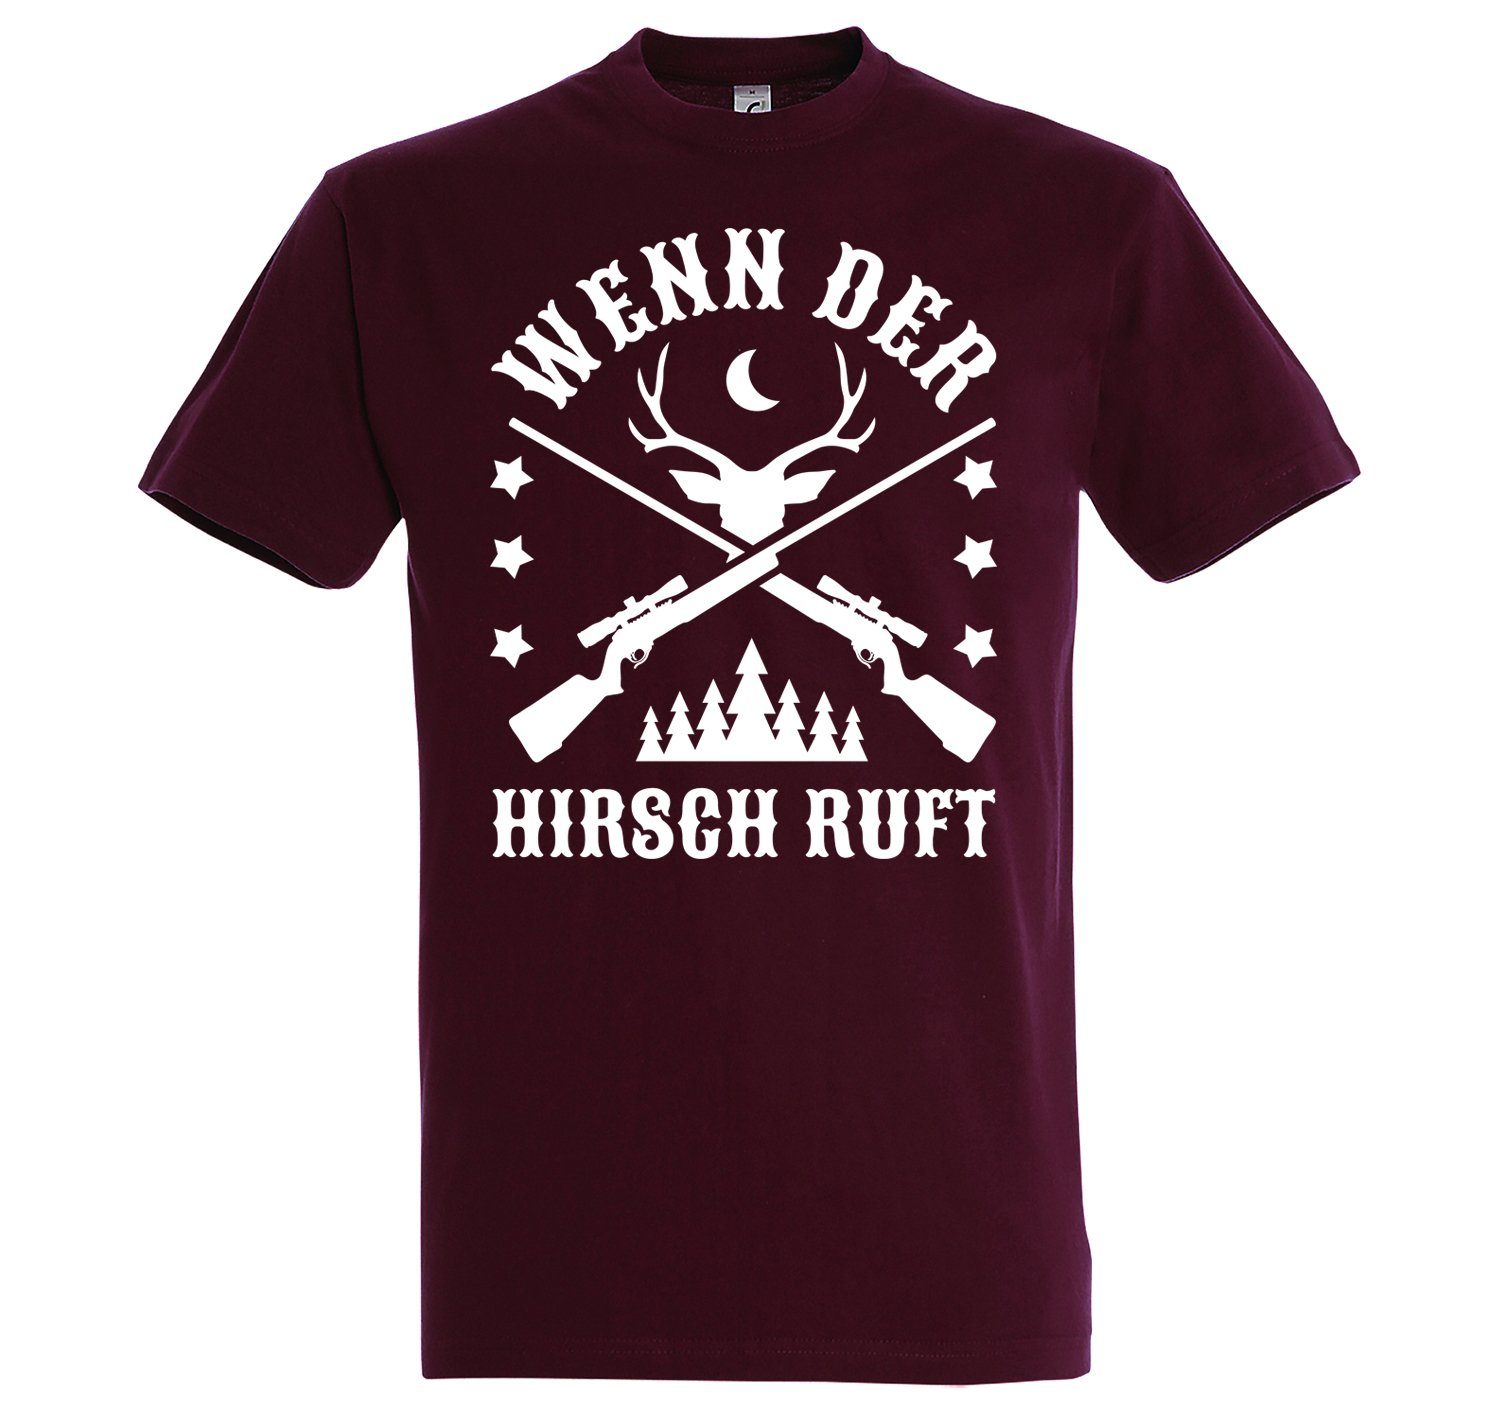 Youth Designz T-Shirt "Wenn Frontprint Shirt Burgund Herren mit Der trendigem Hirsch Ruft"